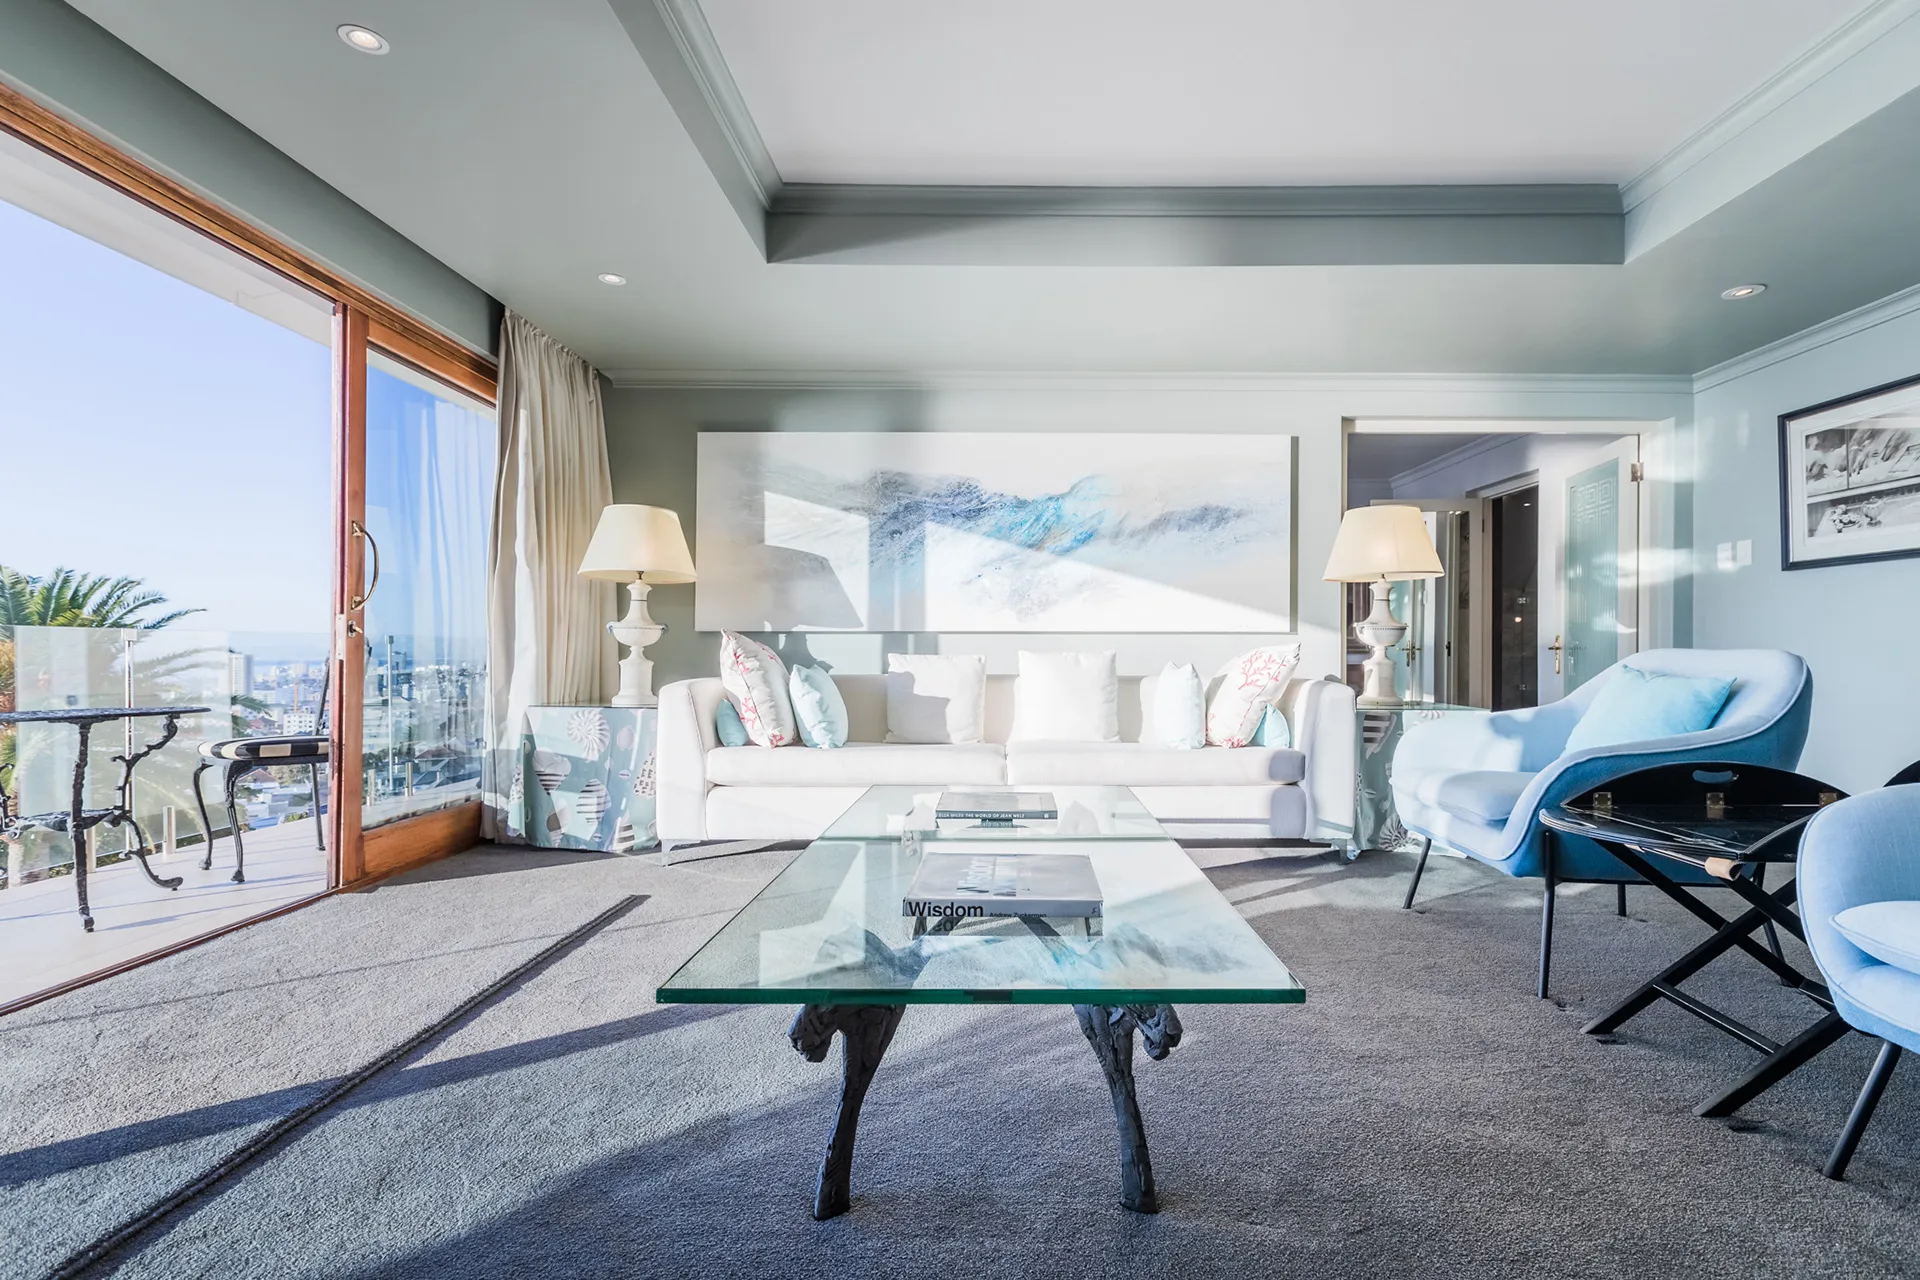 Luxuriös eingerichtete Suite mit Teppichboden